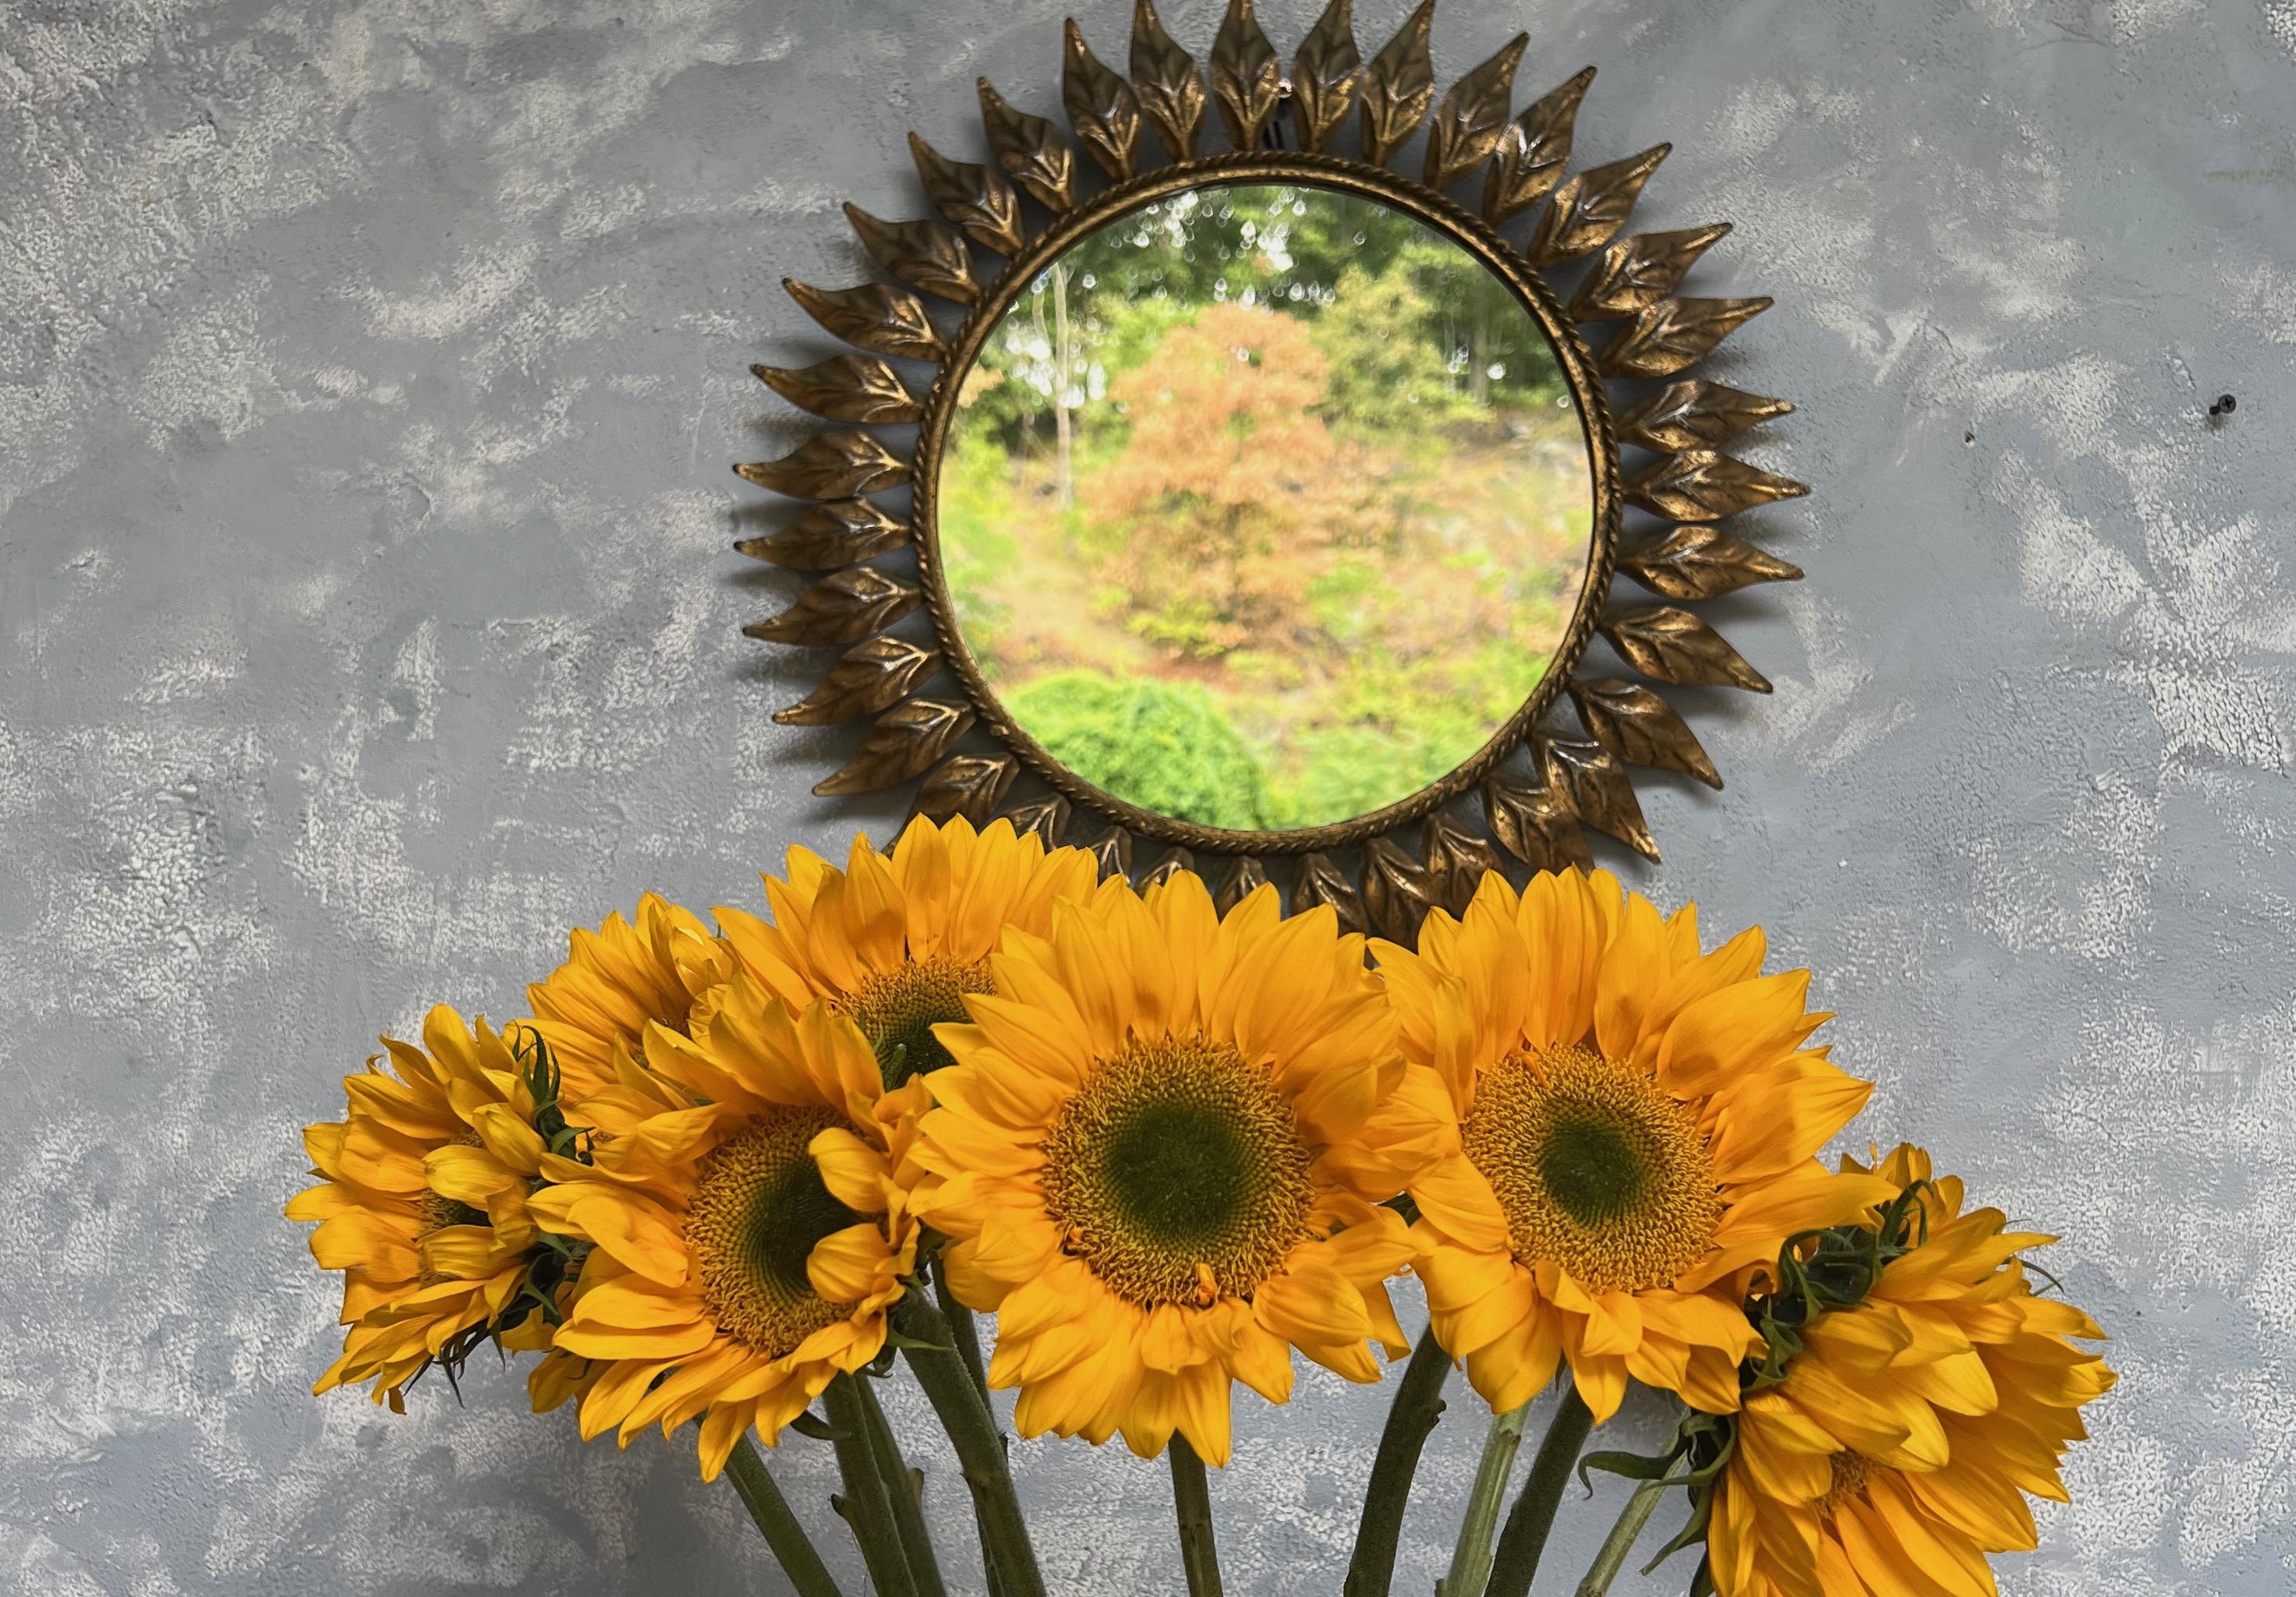 Ein spanischer Sonnenschliffspiegel aus den 1950er Jahren mit eng aneinanderliegenden Blättern oder Strahlen. Dieser atemberaubende spanische Sonnenschliff-Spiegel aus den 1950er Jahren strahlt Laune und Eleganz aus. Die dicht aneinander gereihten